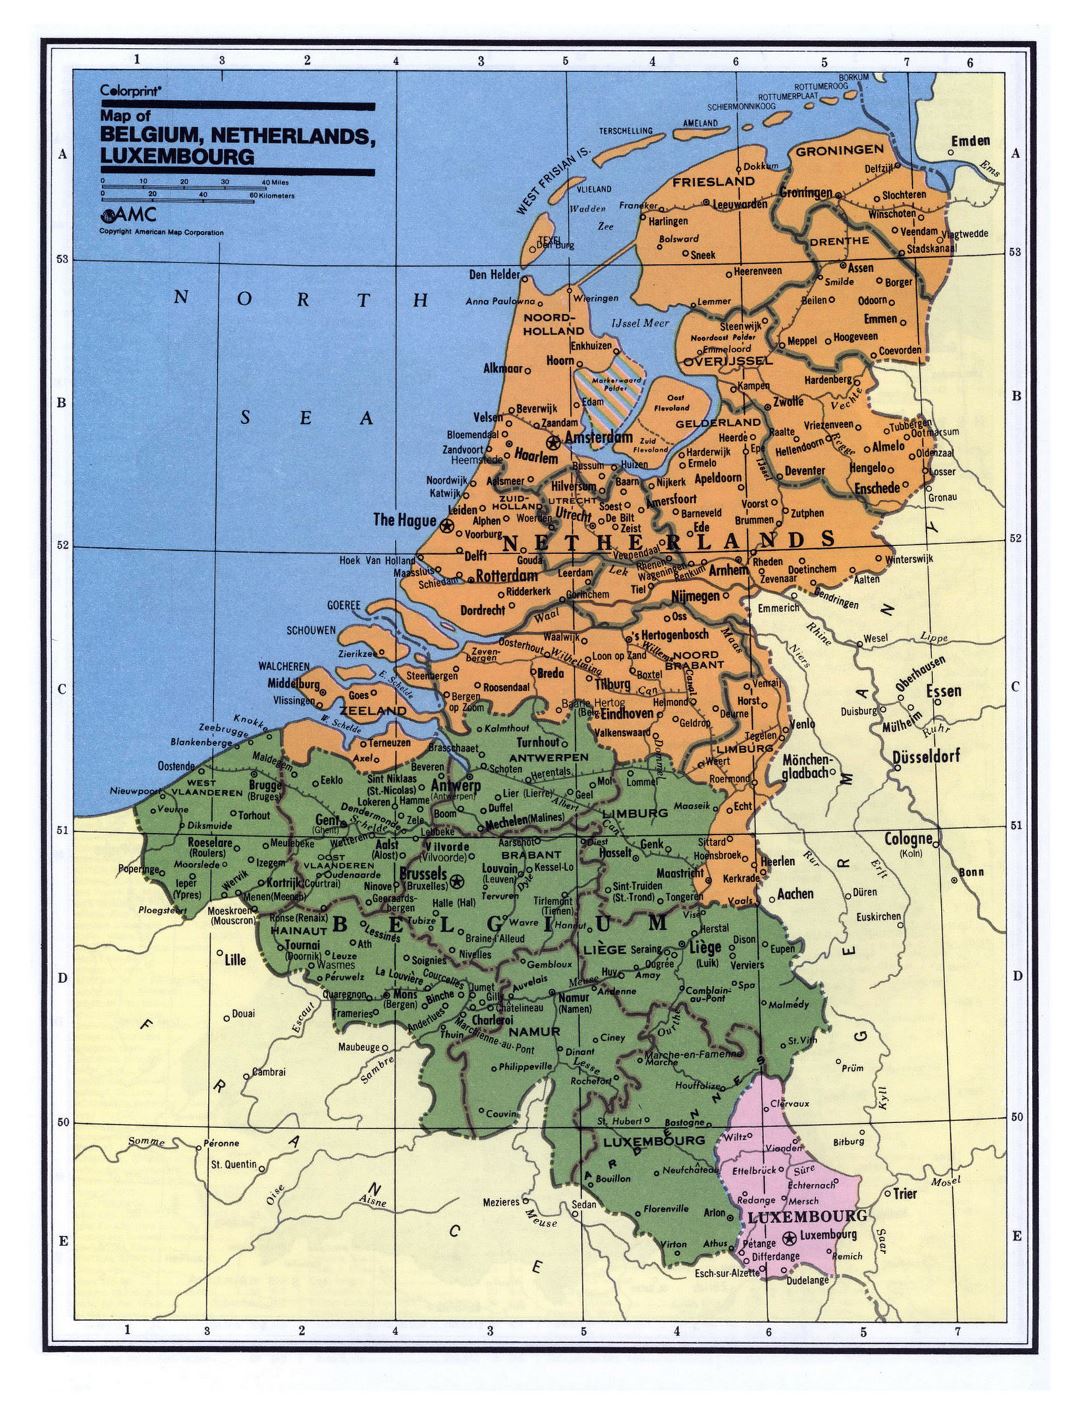 Mapa político y administrativo detallado de Bélgica, Holanda y Luxemburgo